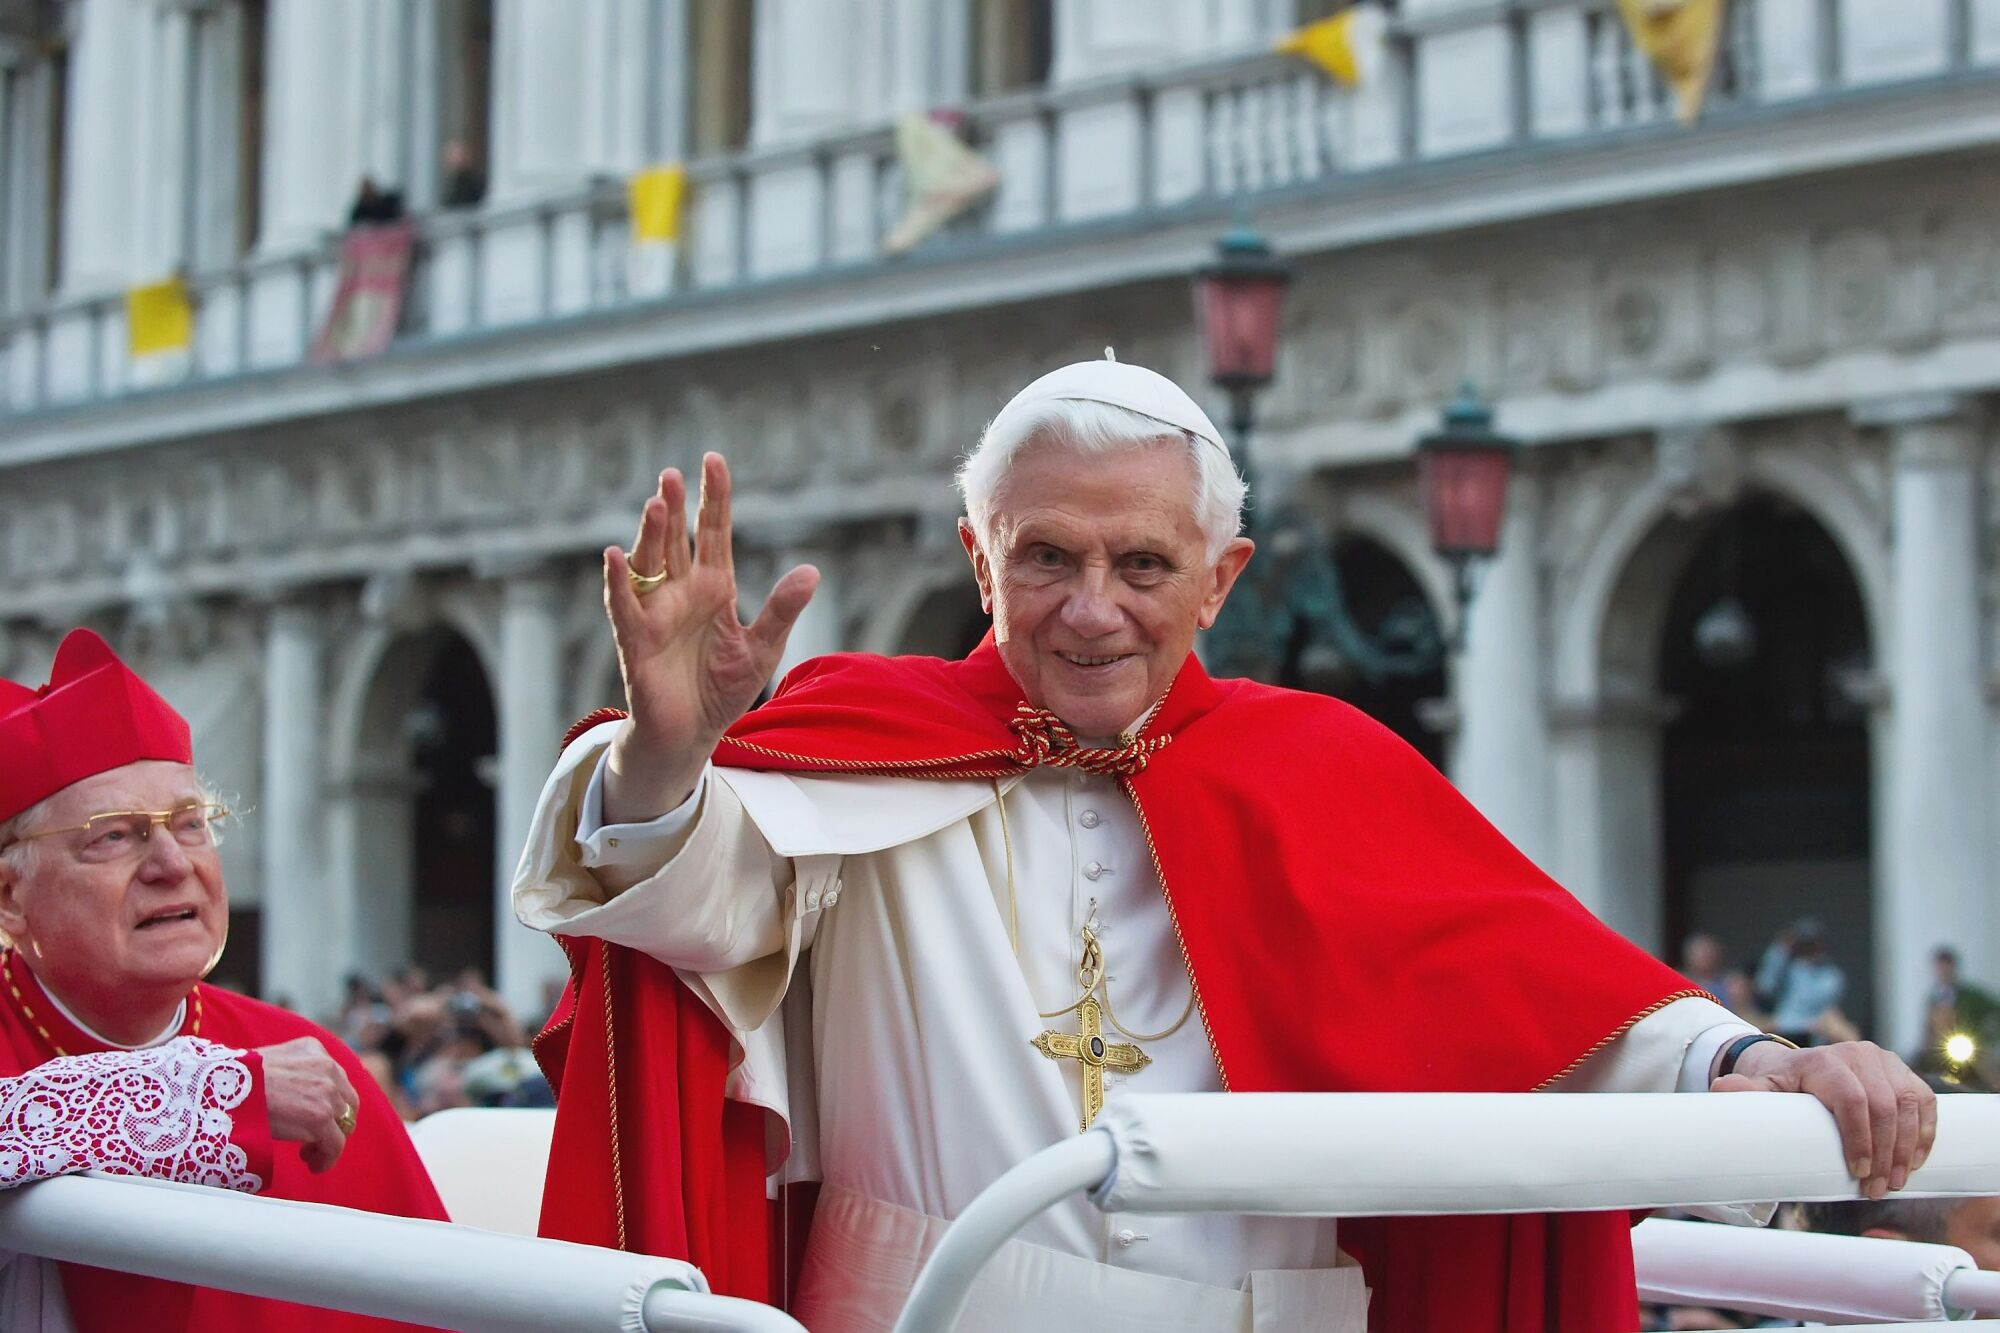 Papa Benedict XVI, bir binanın önünden geçerken başka bir yolcu bakarken bir araçtan el sallıyor.